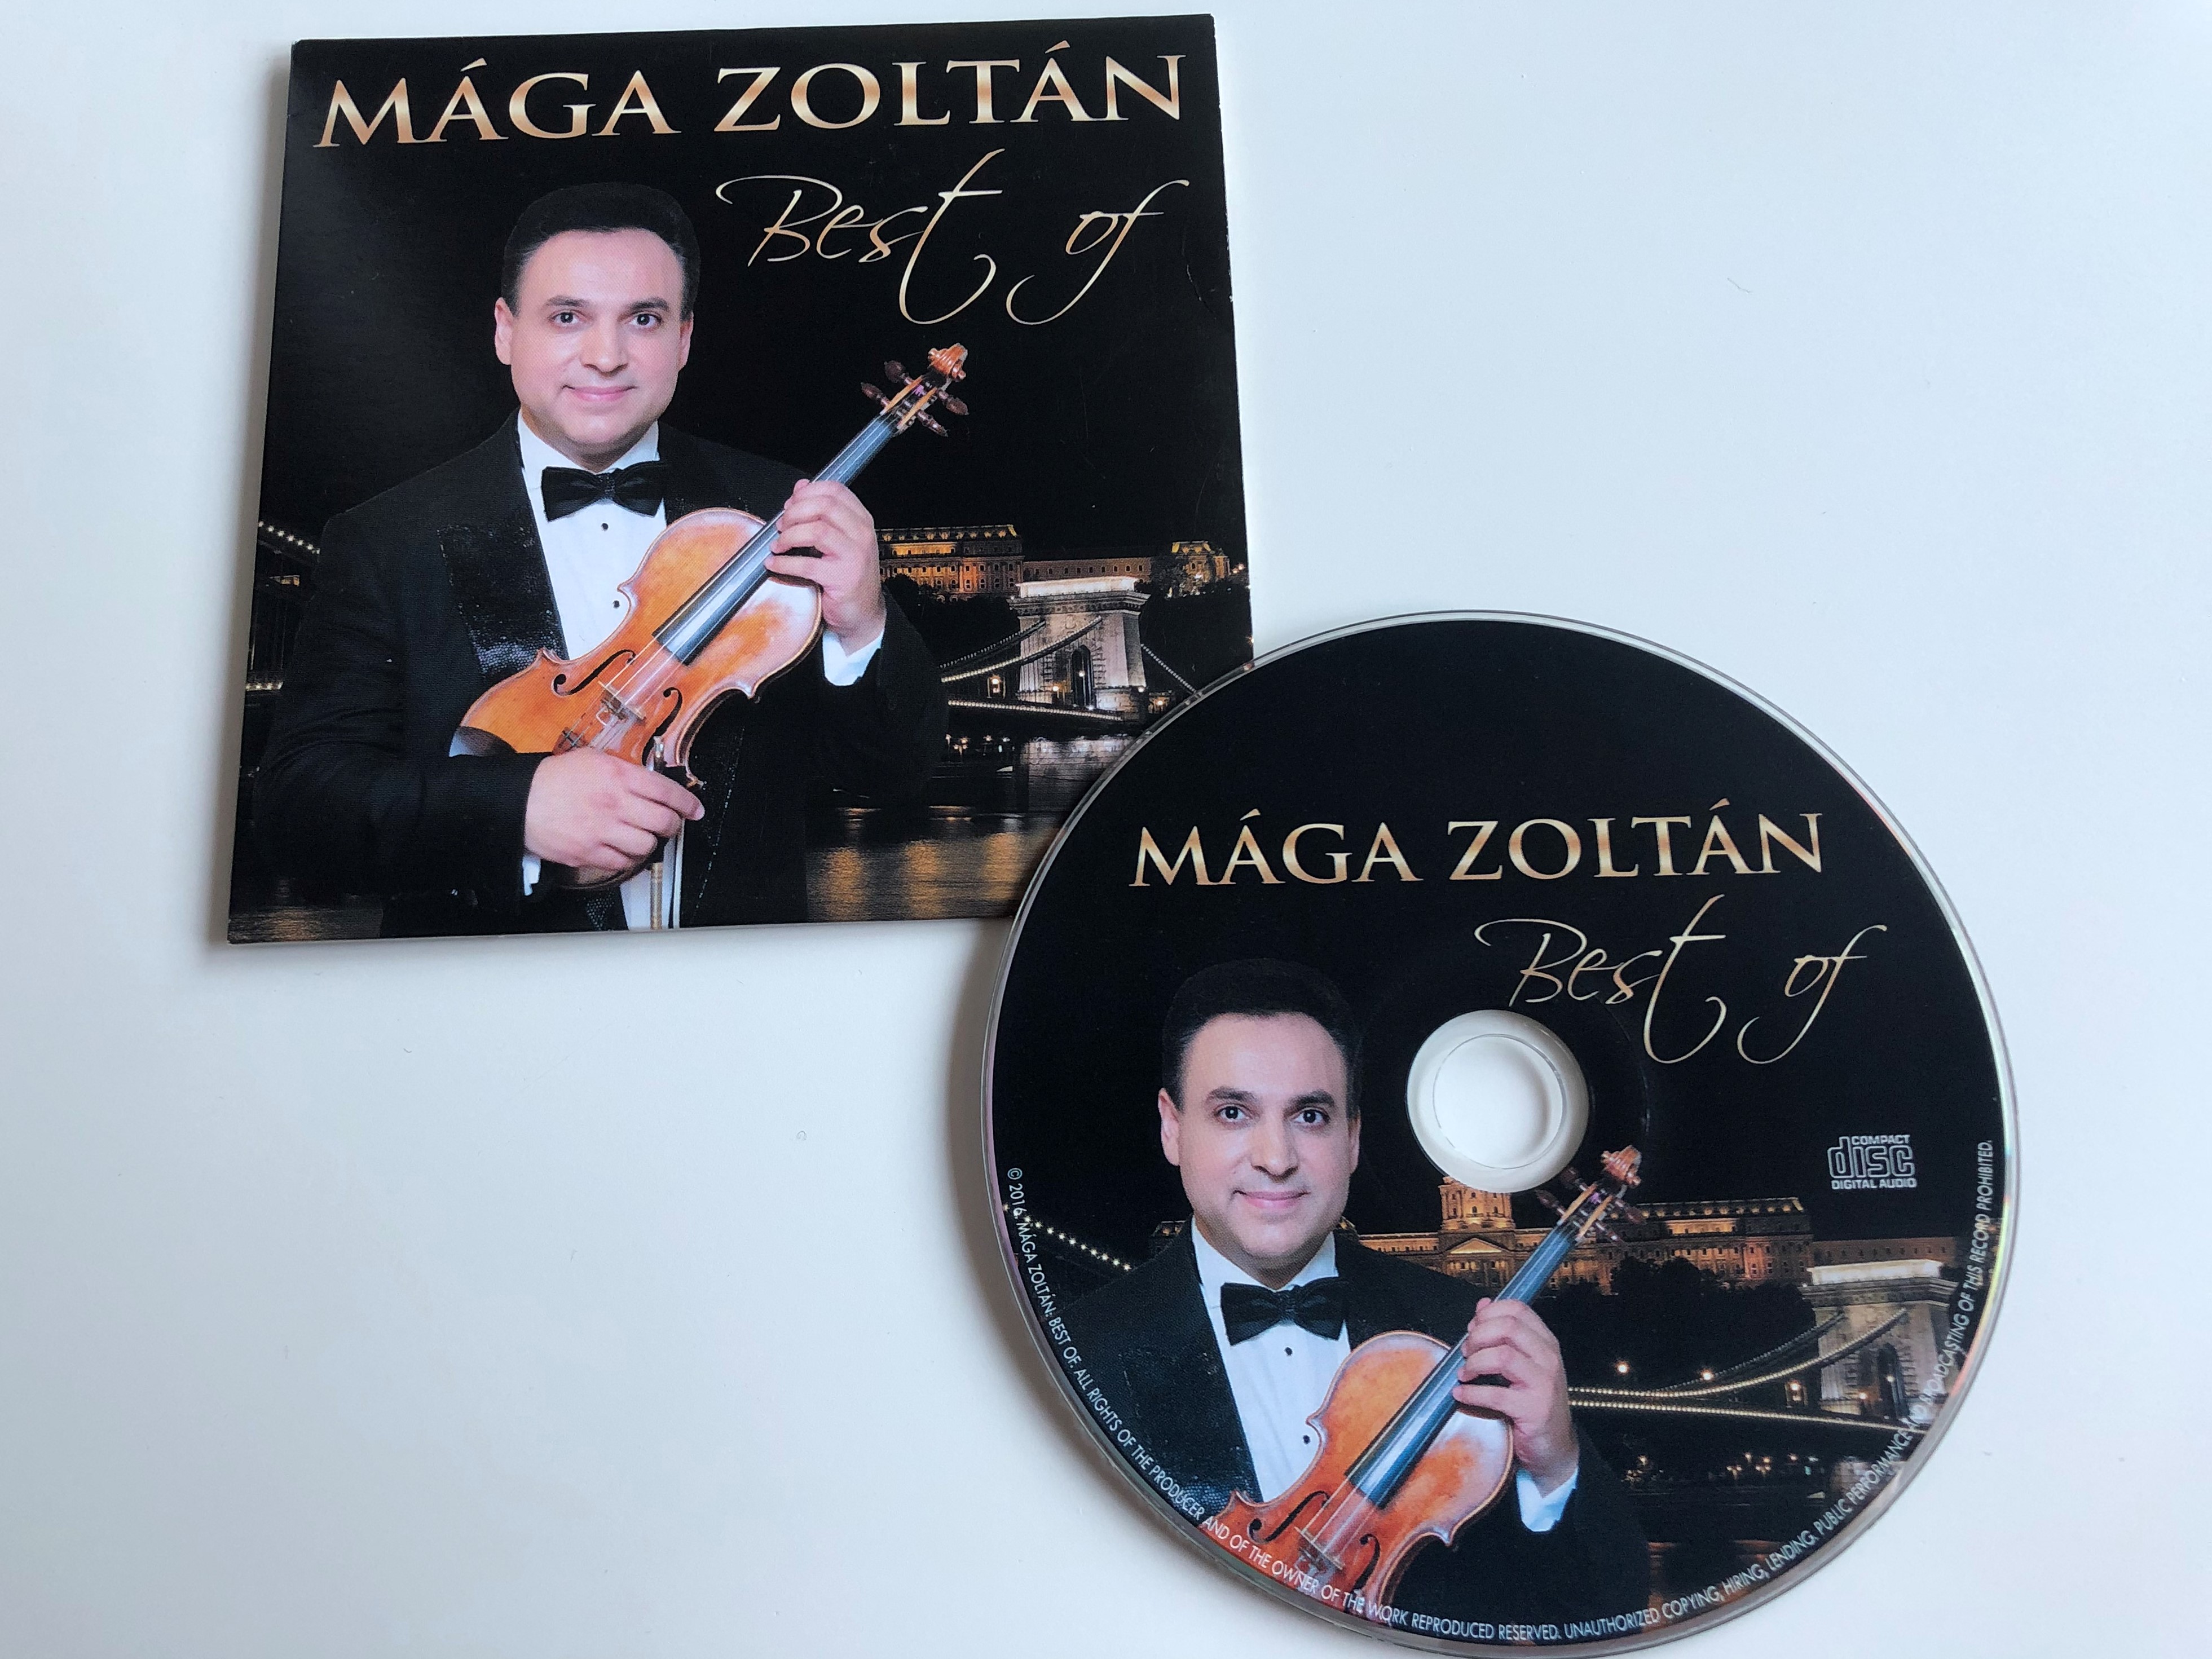 m-ga-zolt-n-best-of-m-ga-zolt-n-self-released-audio-cd-3-.jpg